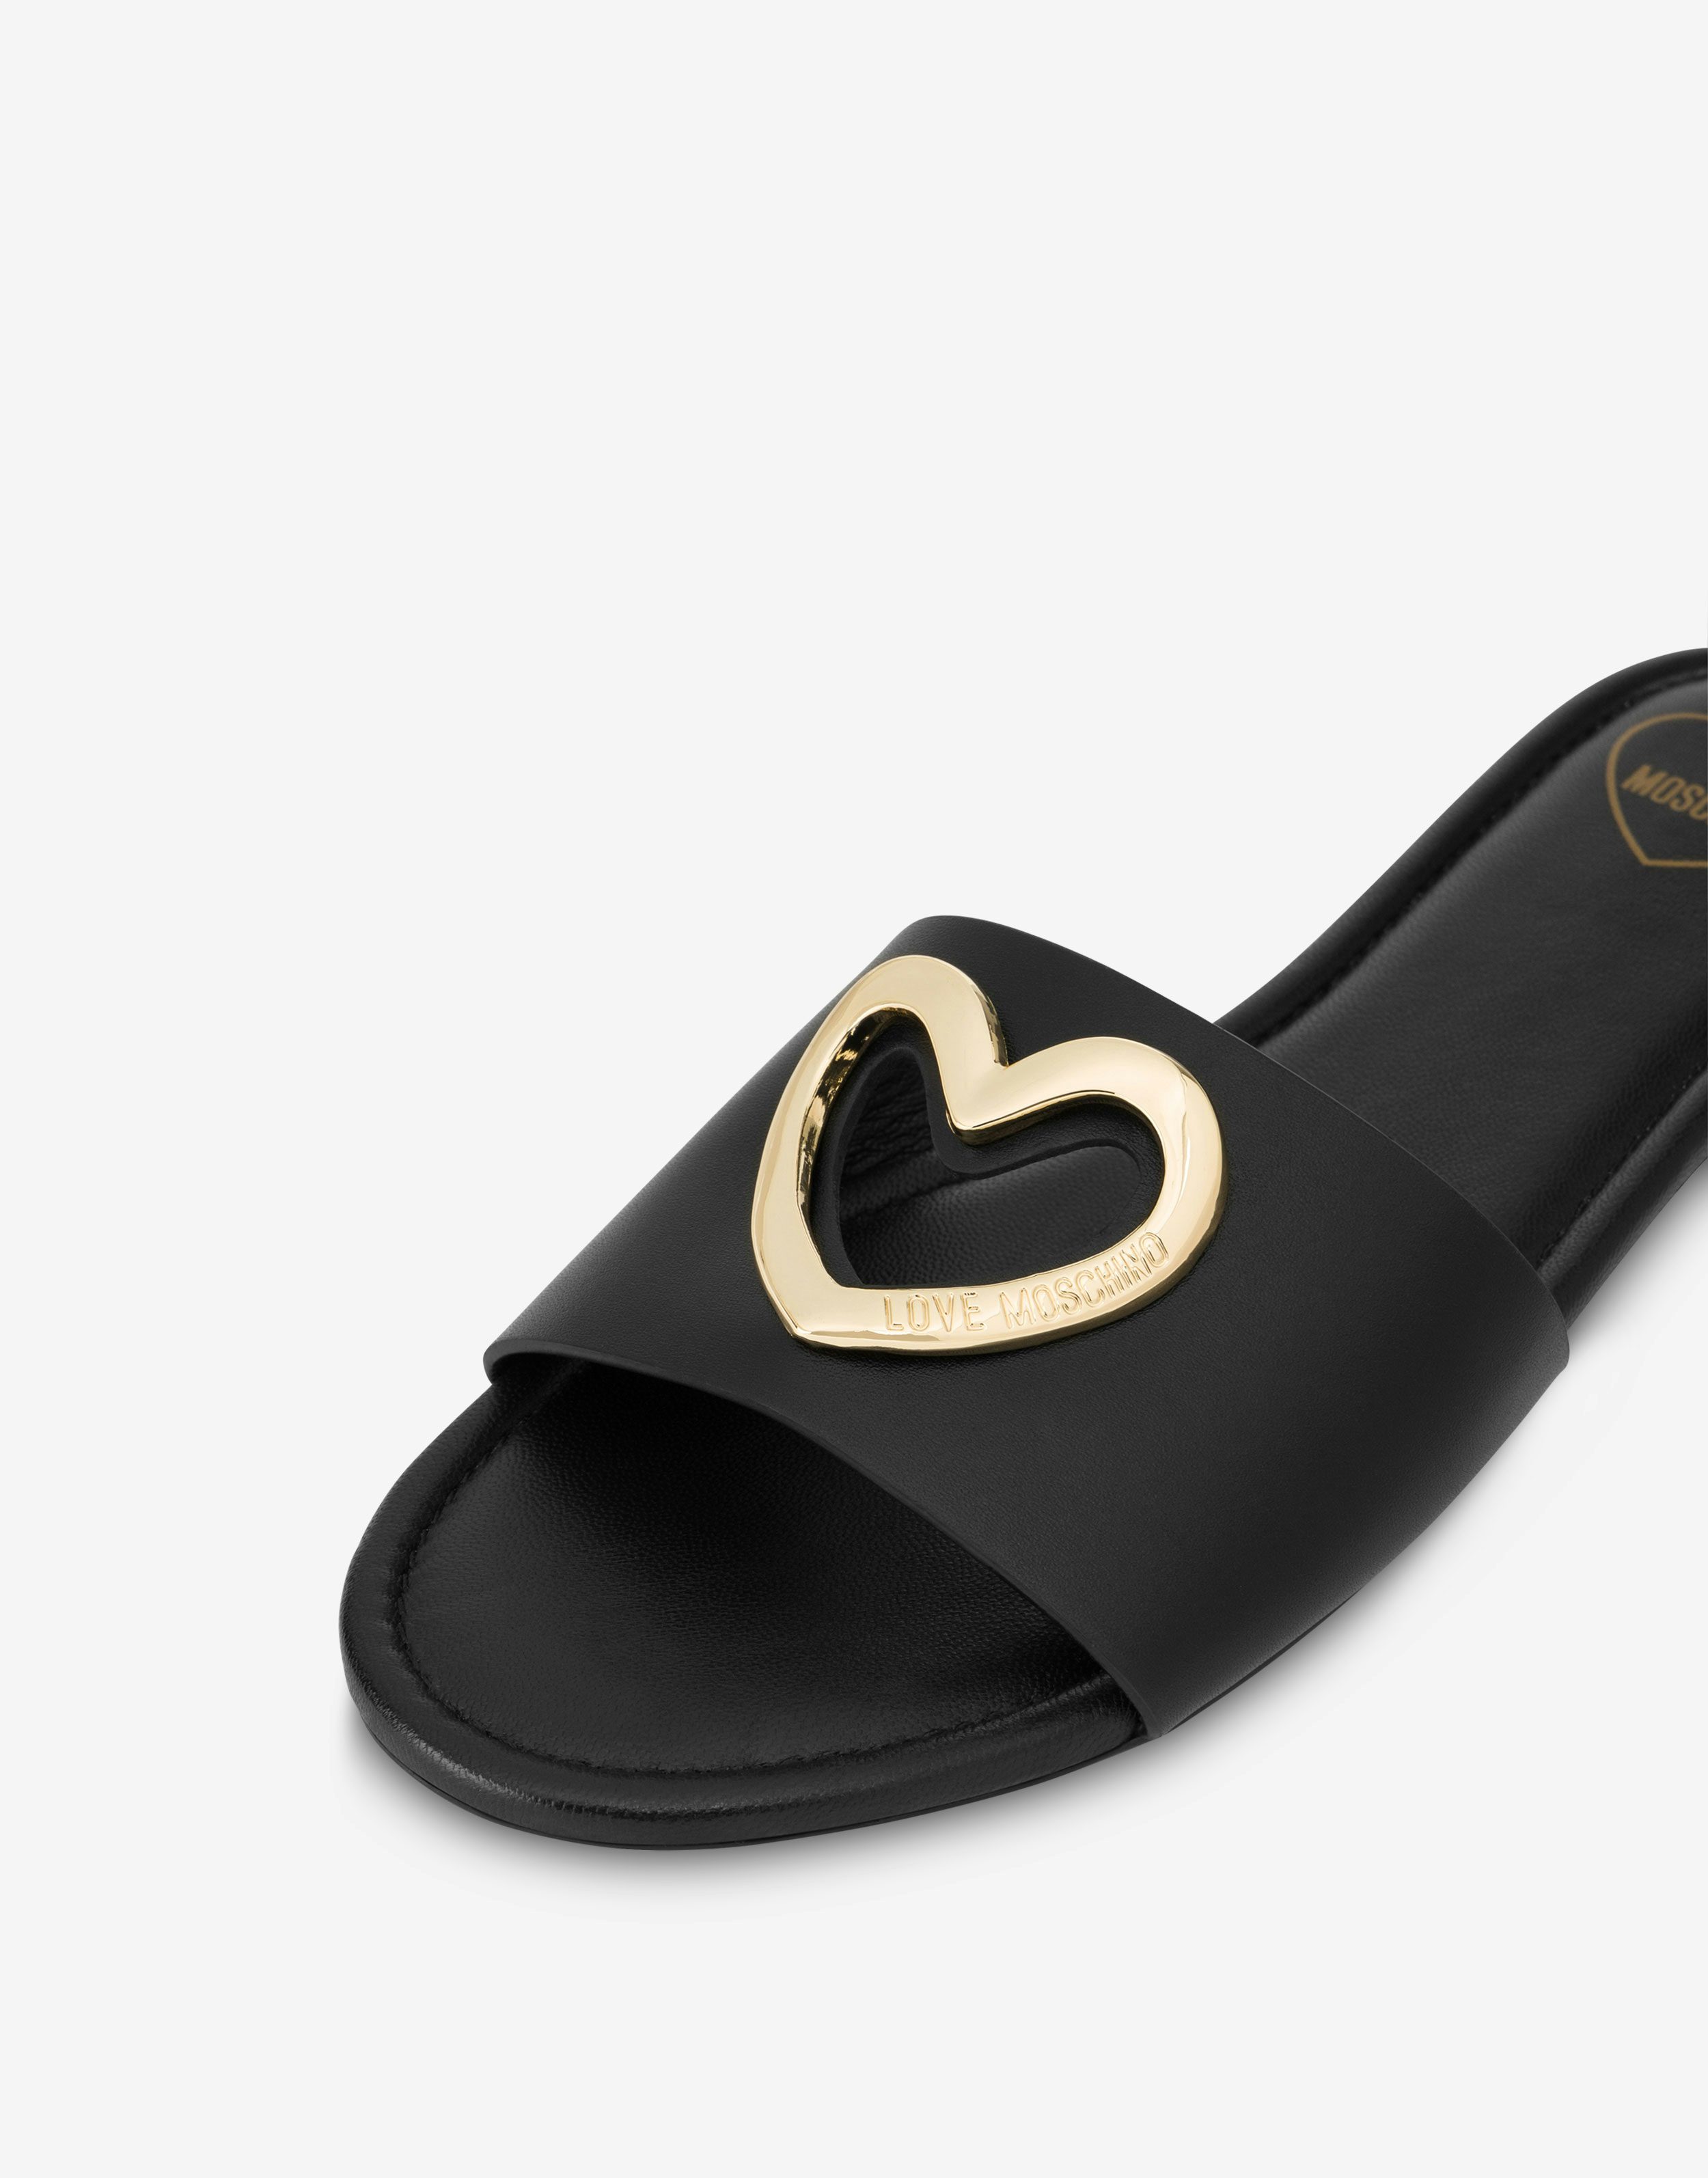 Heart Cut-out calfskin flat sandals 2